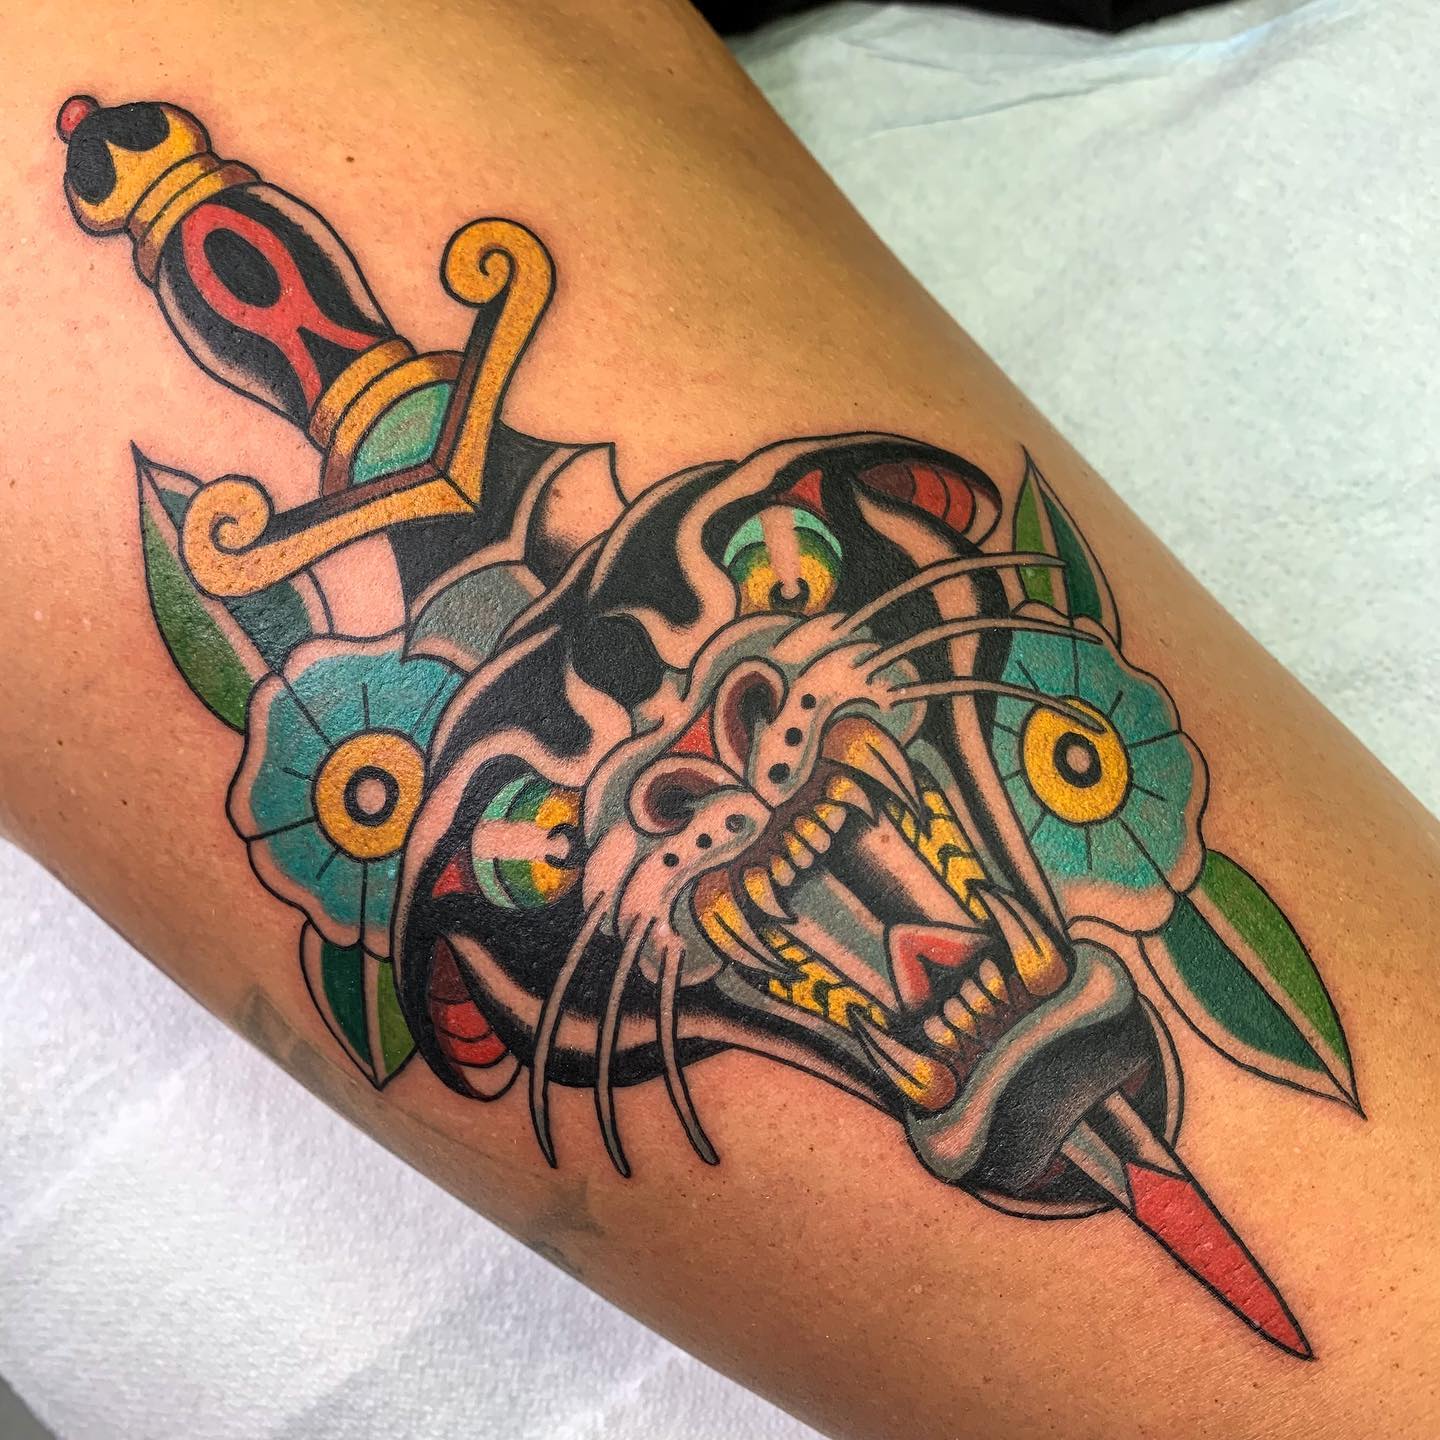 Tatuaje de daga divertido y colorido.